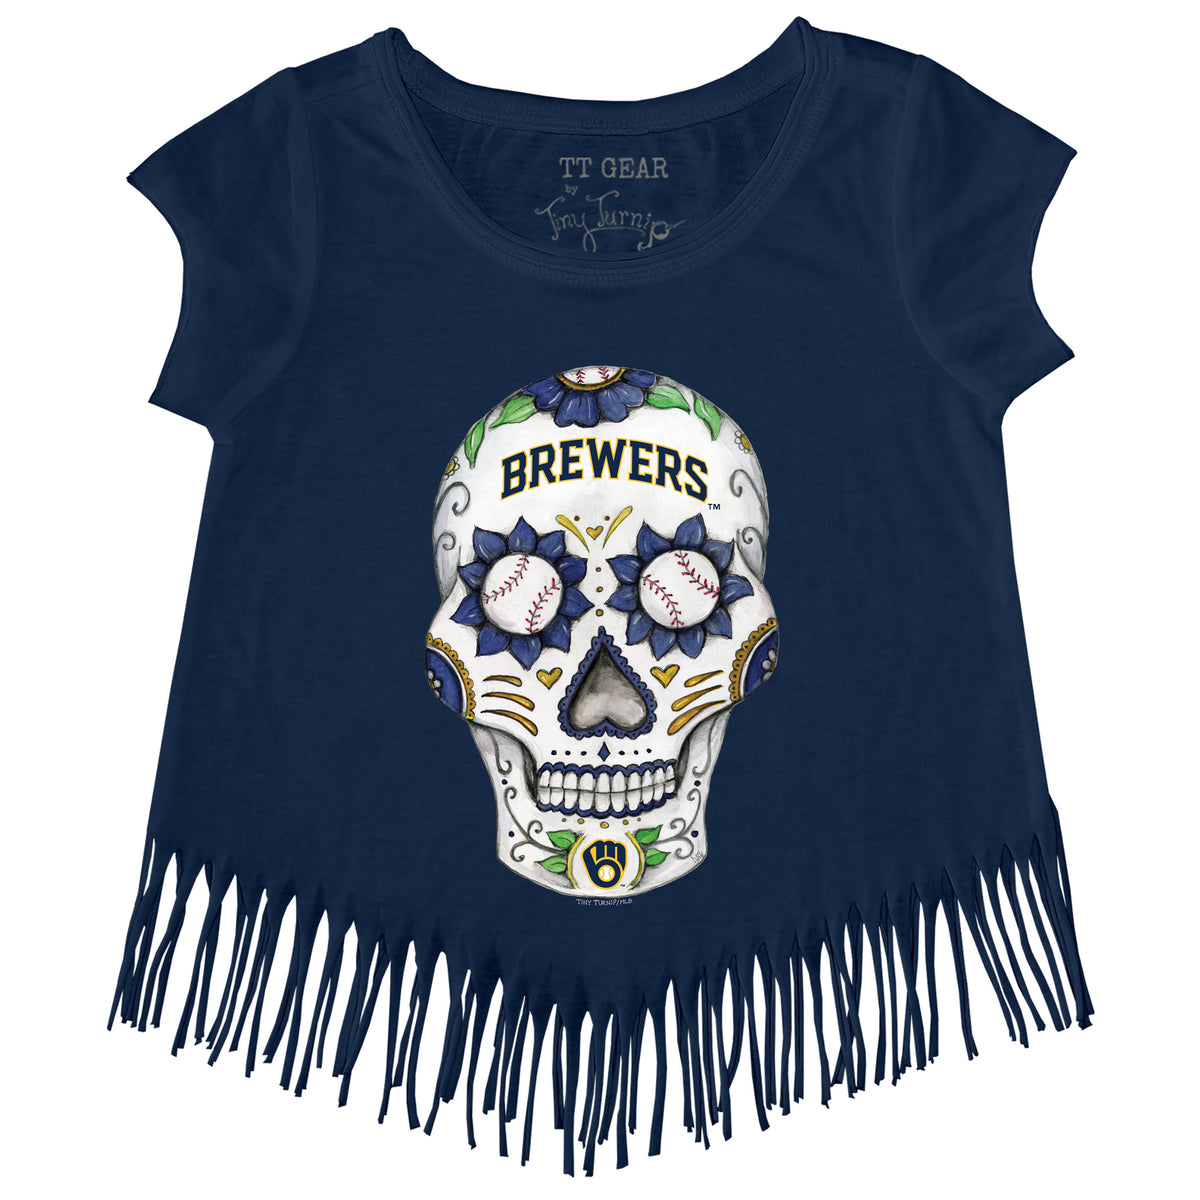 Milwaukee Brewers Grateful Dead T Shirt Unisex Cool Size S - 5XL